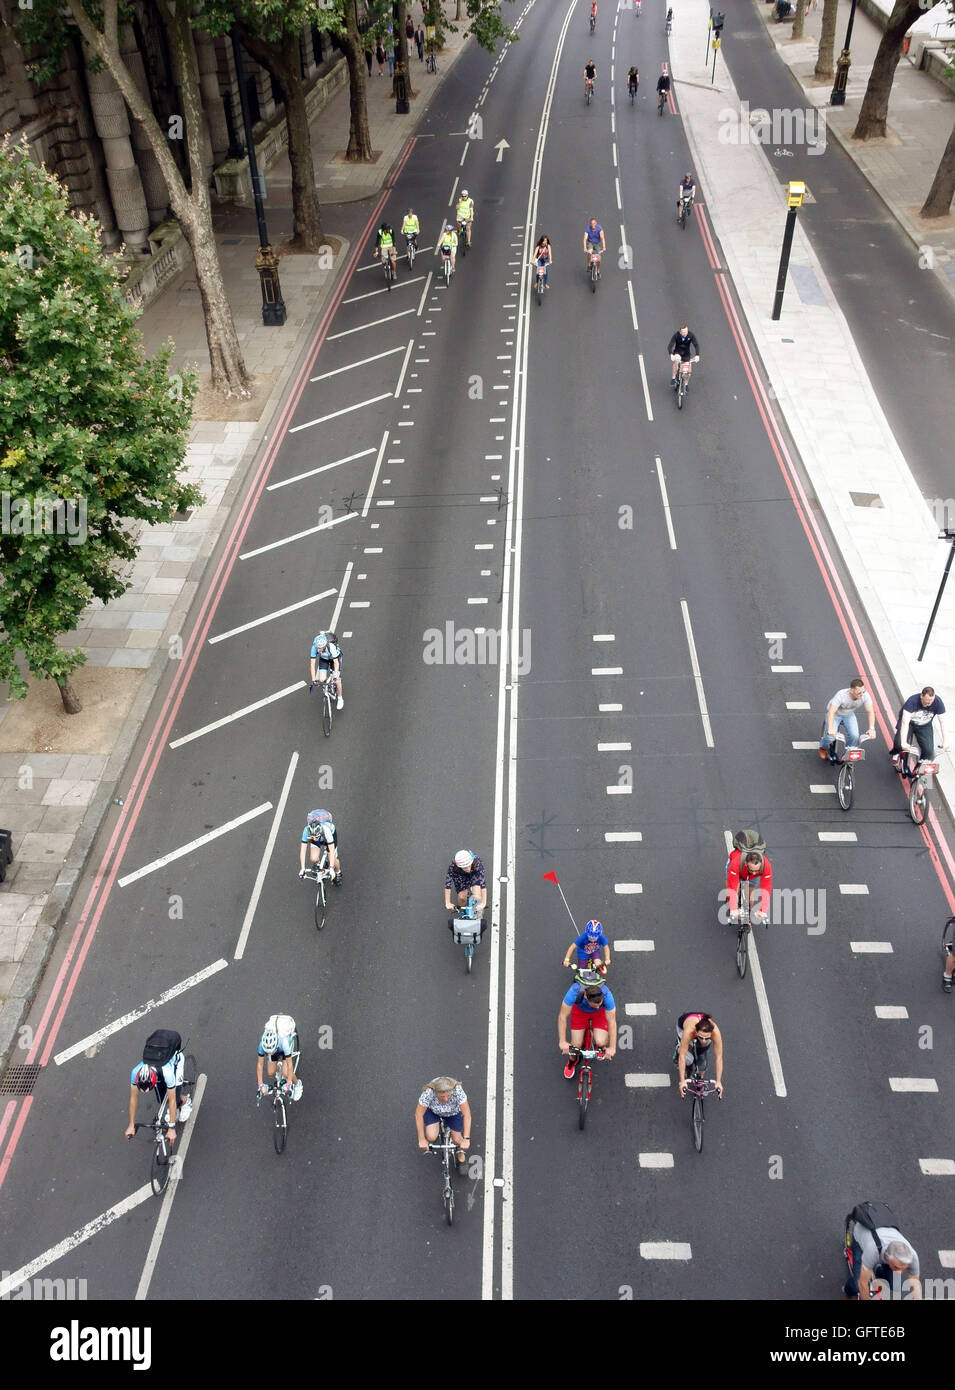 Alle Spuren von Victoria Embankment in der Nähe von Waterloo Bridge, London von Fahrrädern während aufsichtsrechtlichen RideLondon 2016 Veranstaltung besetzt. Stockfoto